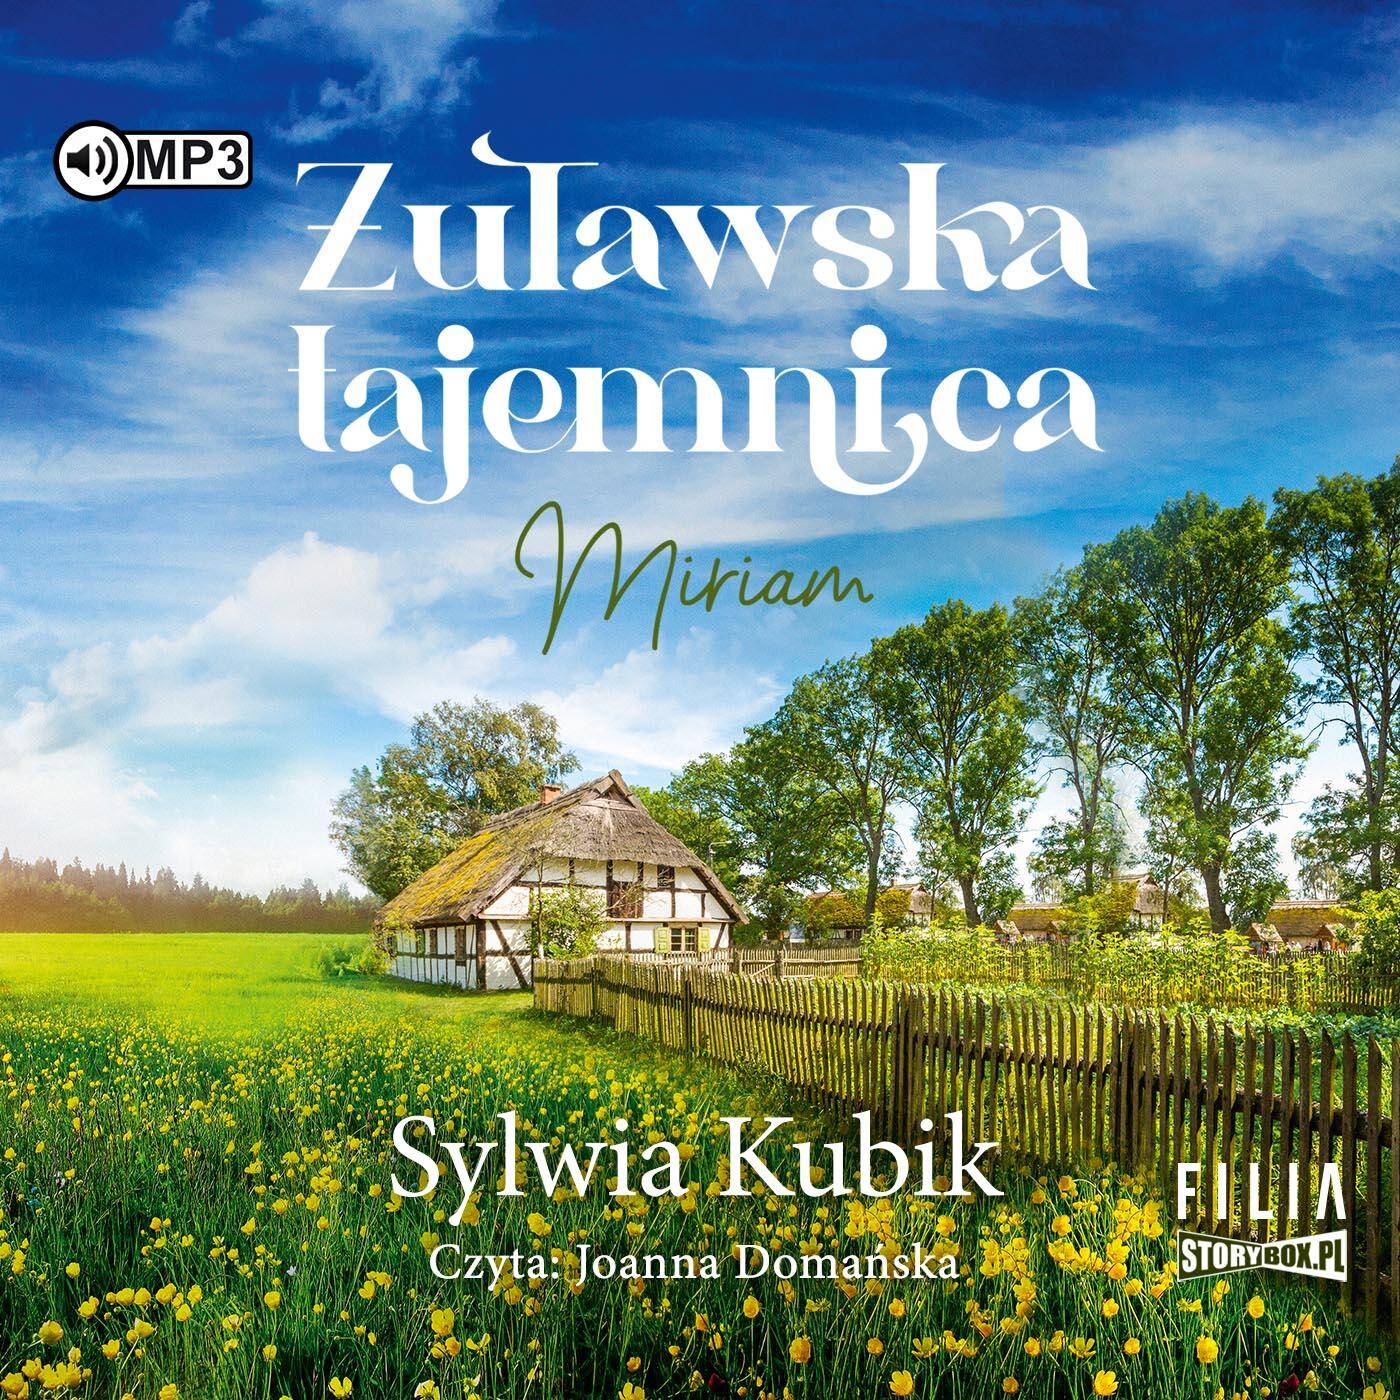 CD MP3 Żuławska tajemnica. Miriam